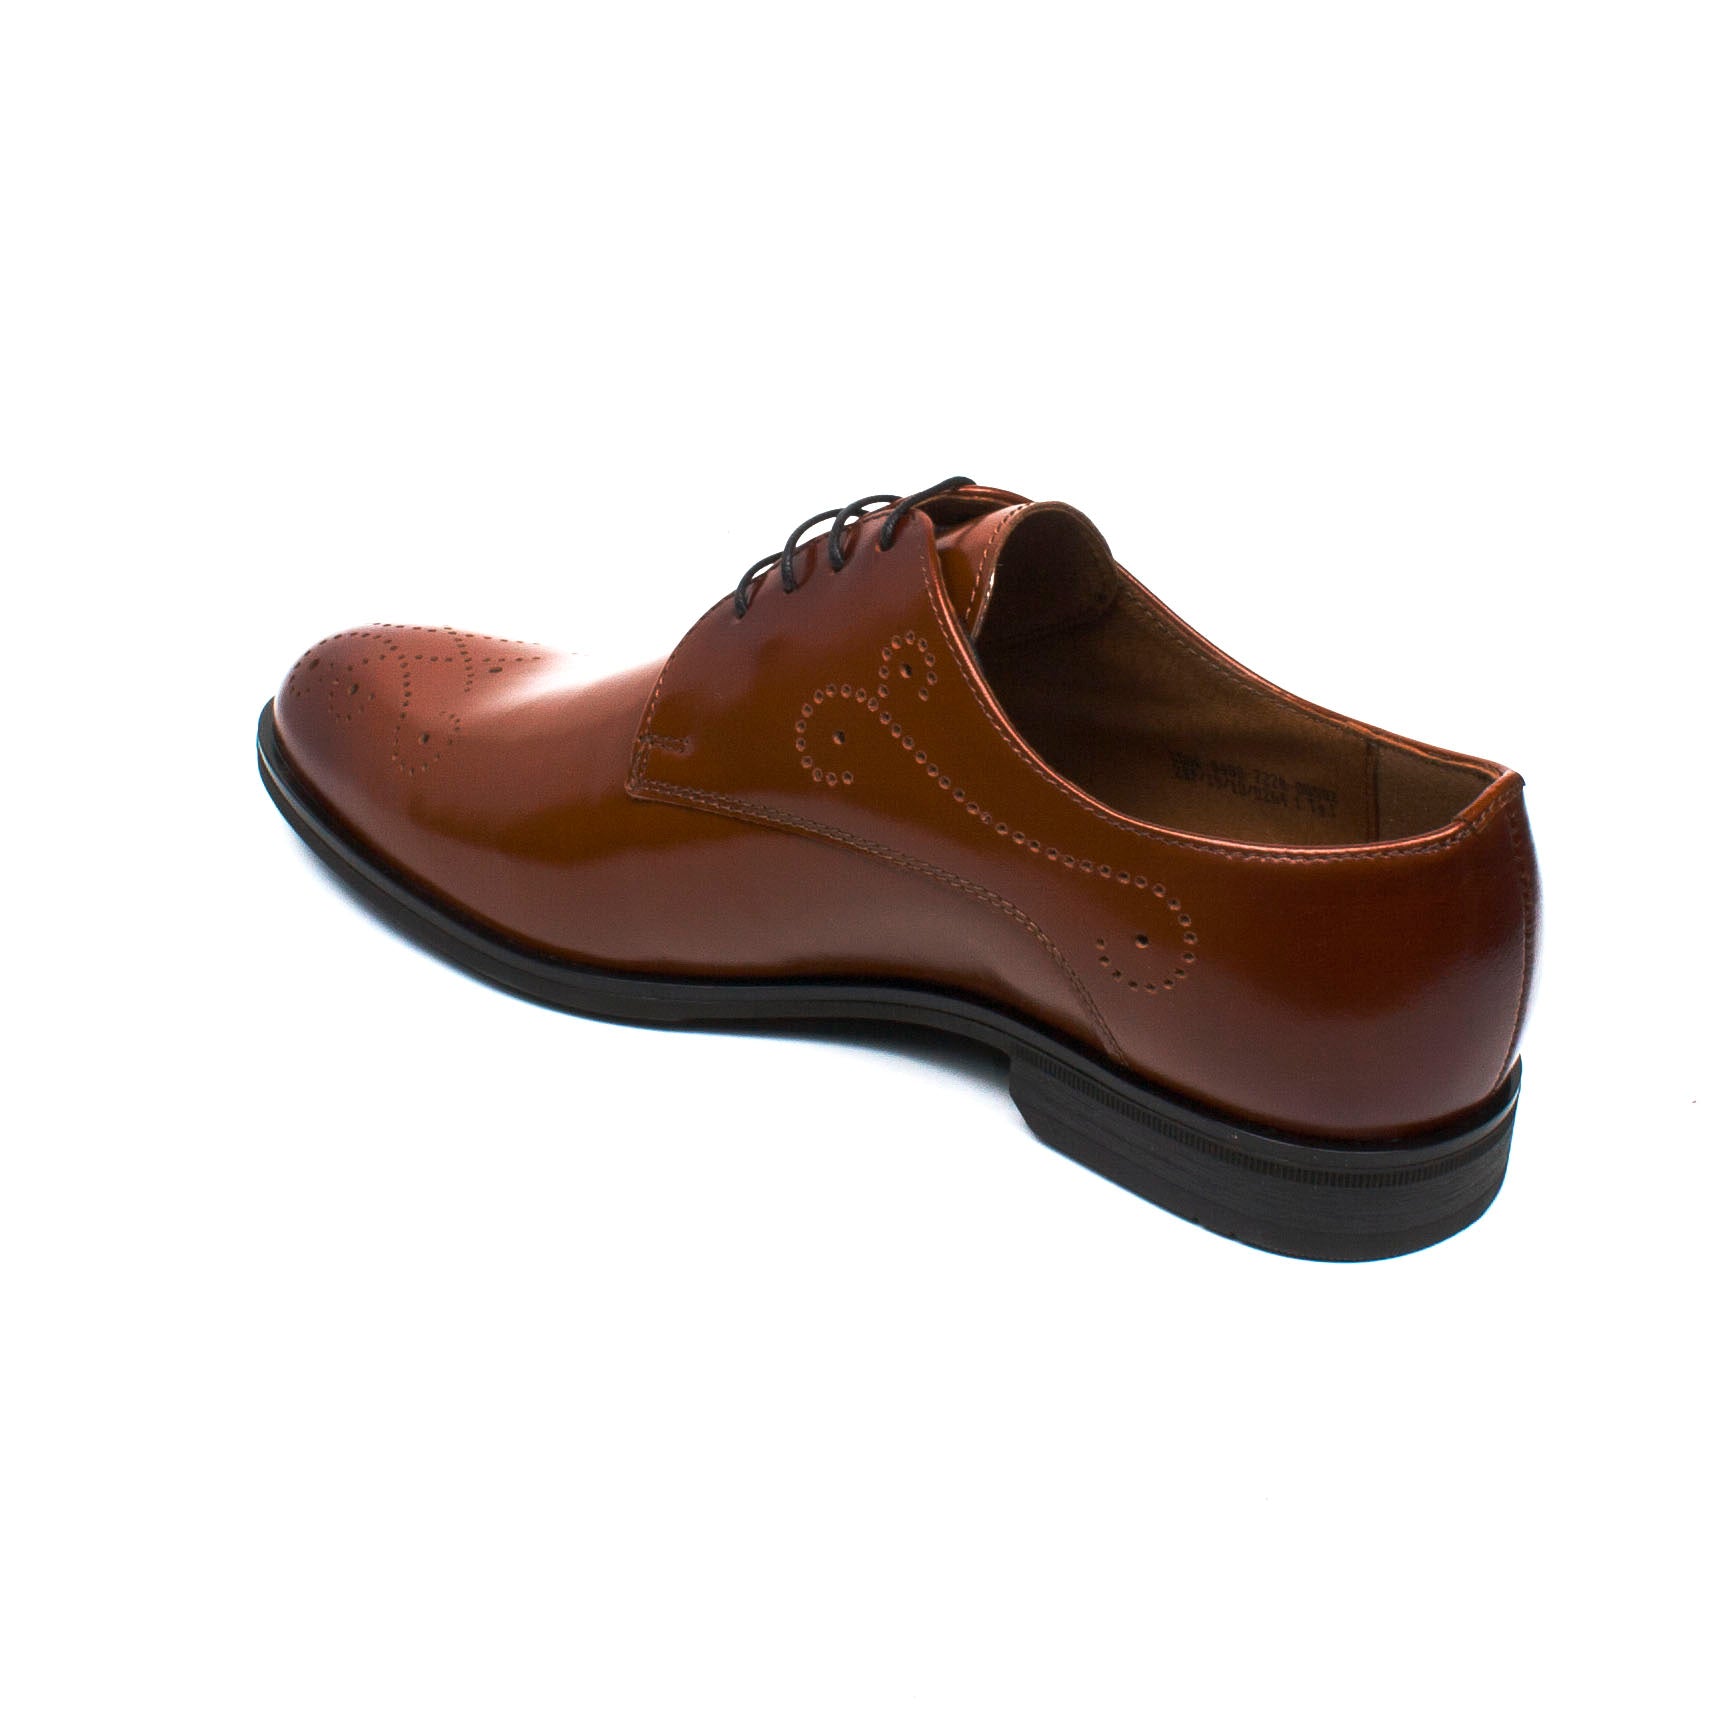 Conhpol Pantofi barbati cognac IB0578-CGN